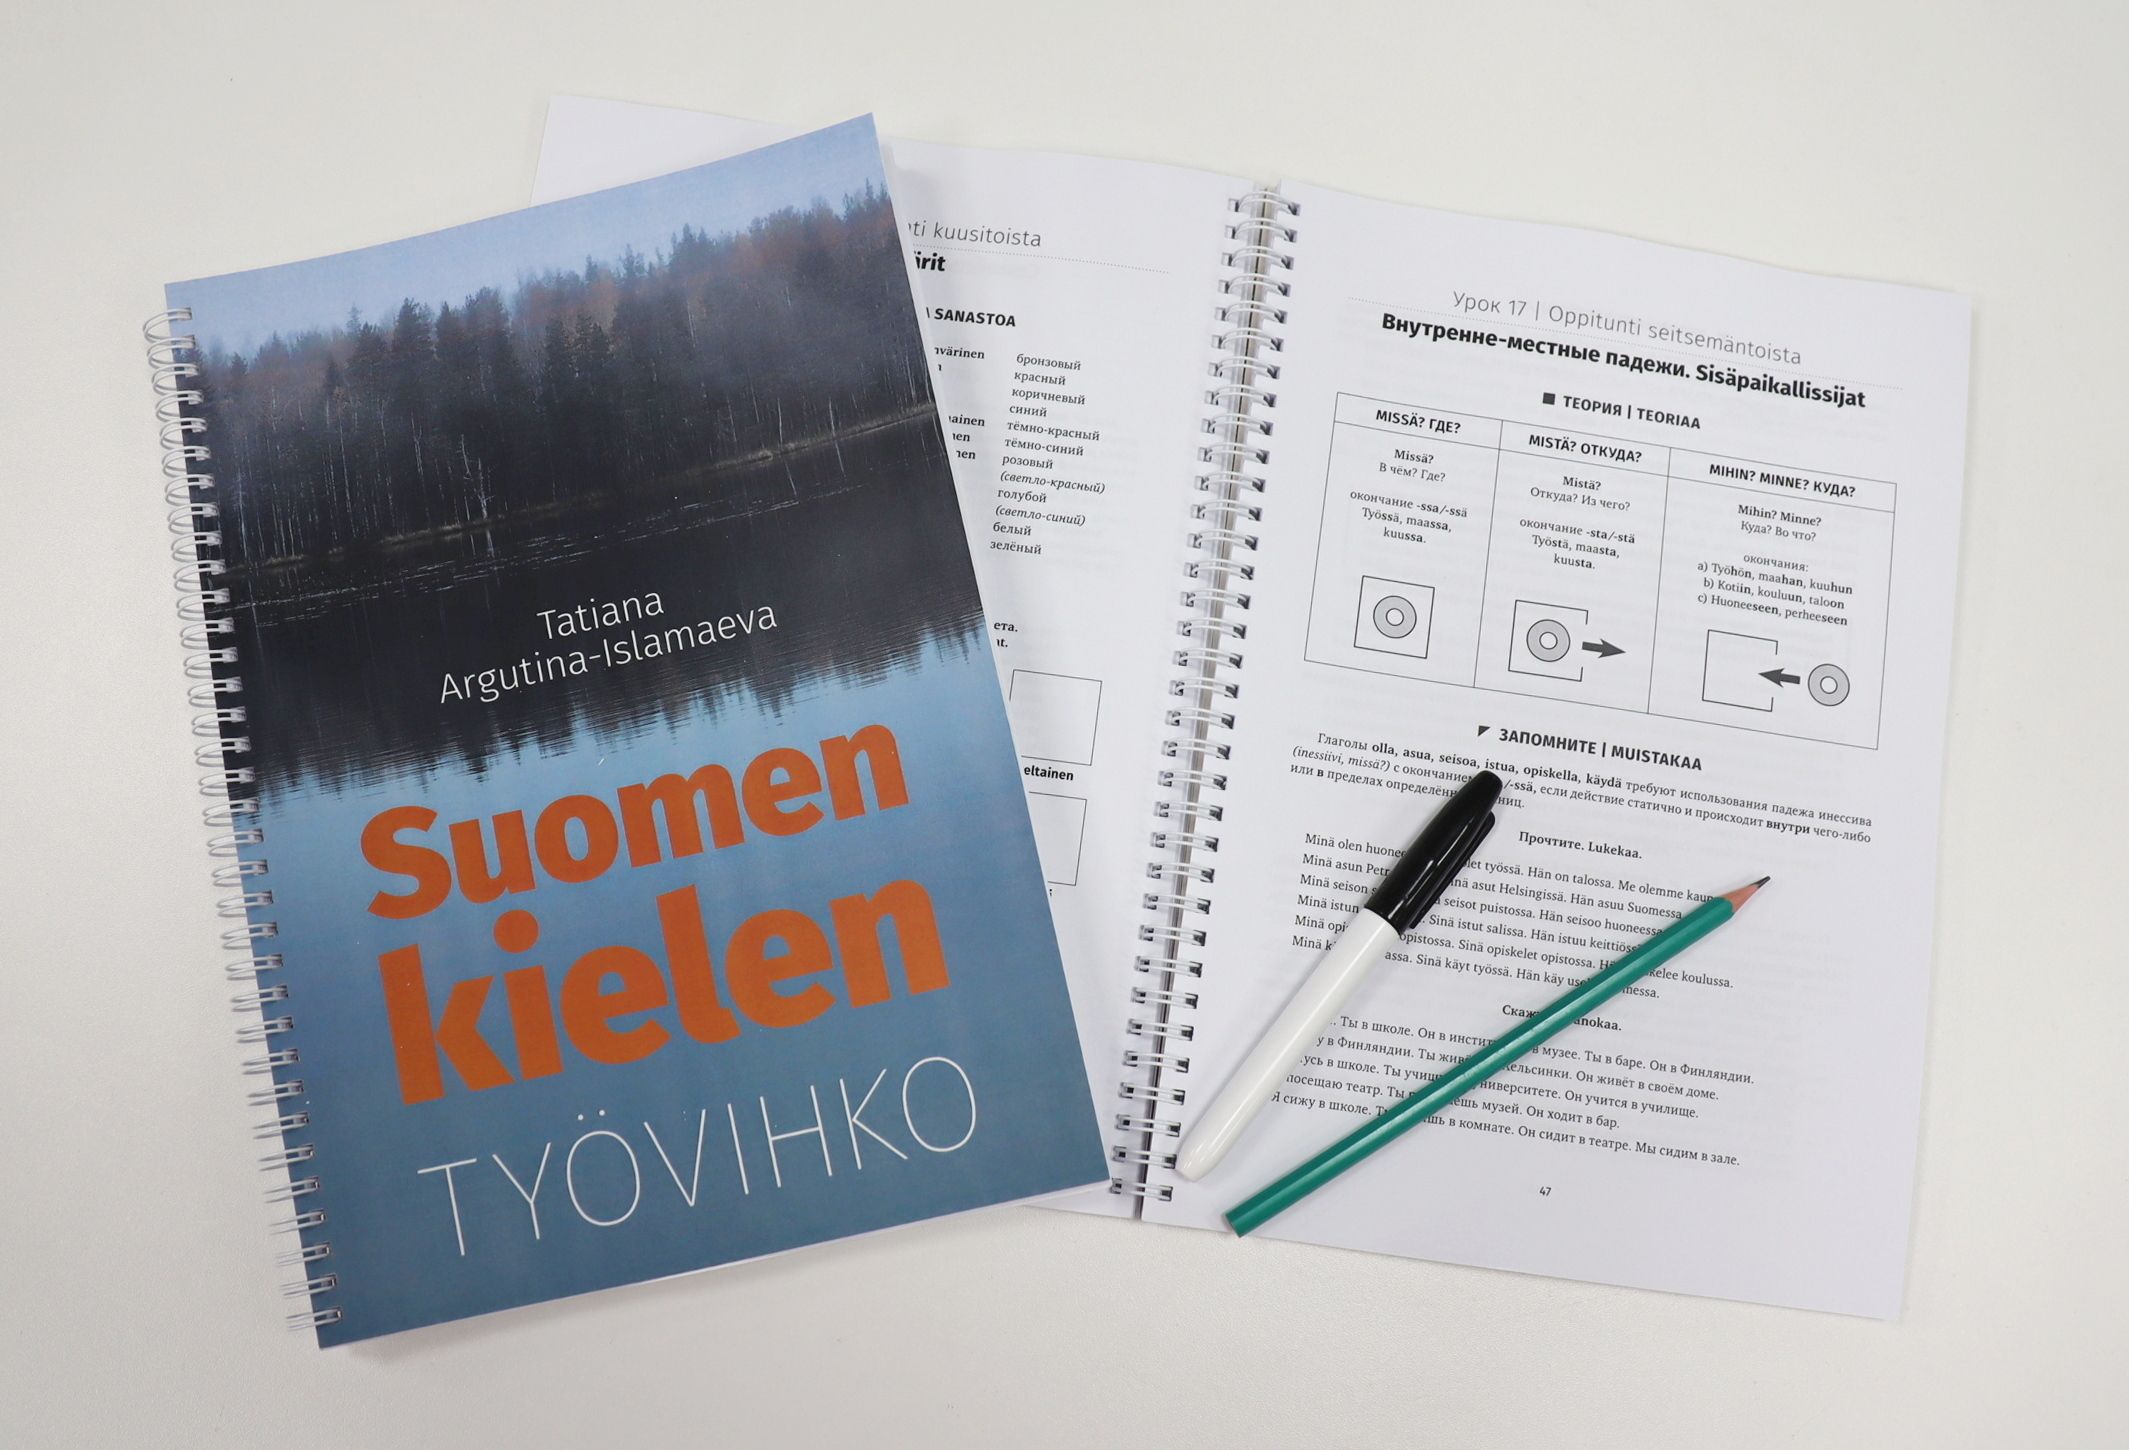 Автор нового пособия по финскому языку рекомендует «Рабочую тетрадь» (Suomen kielen työvihko) для использования в том числе и школьниками (6+).